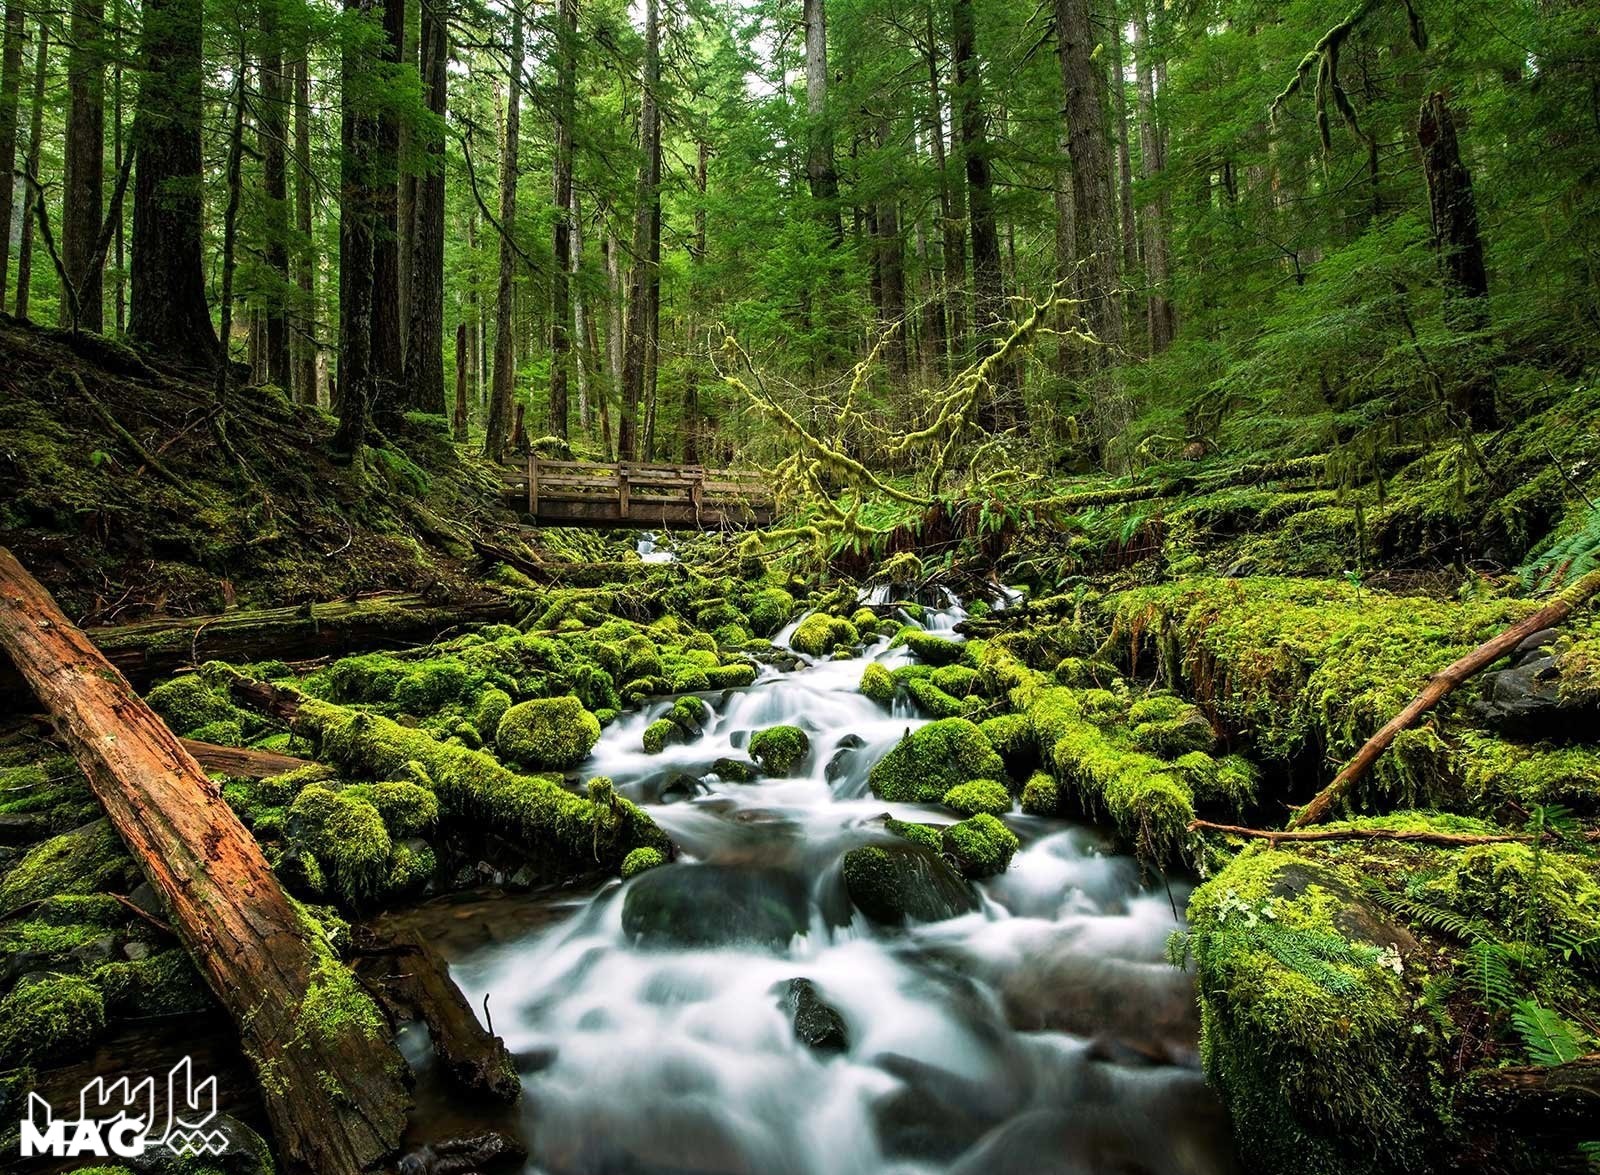 جنگل بهاری - عکس طبیعت با کیفیت بالا